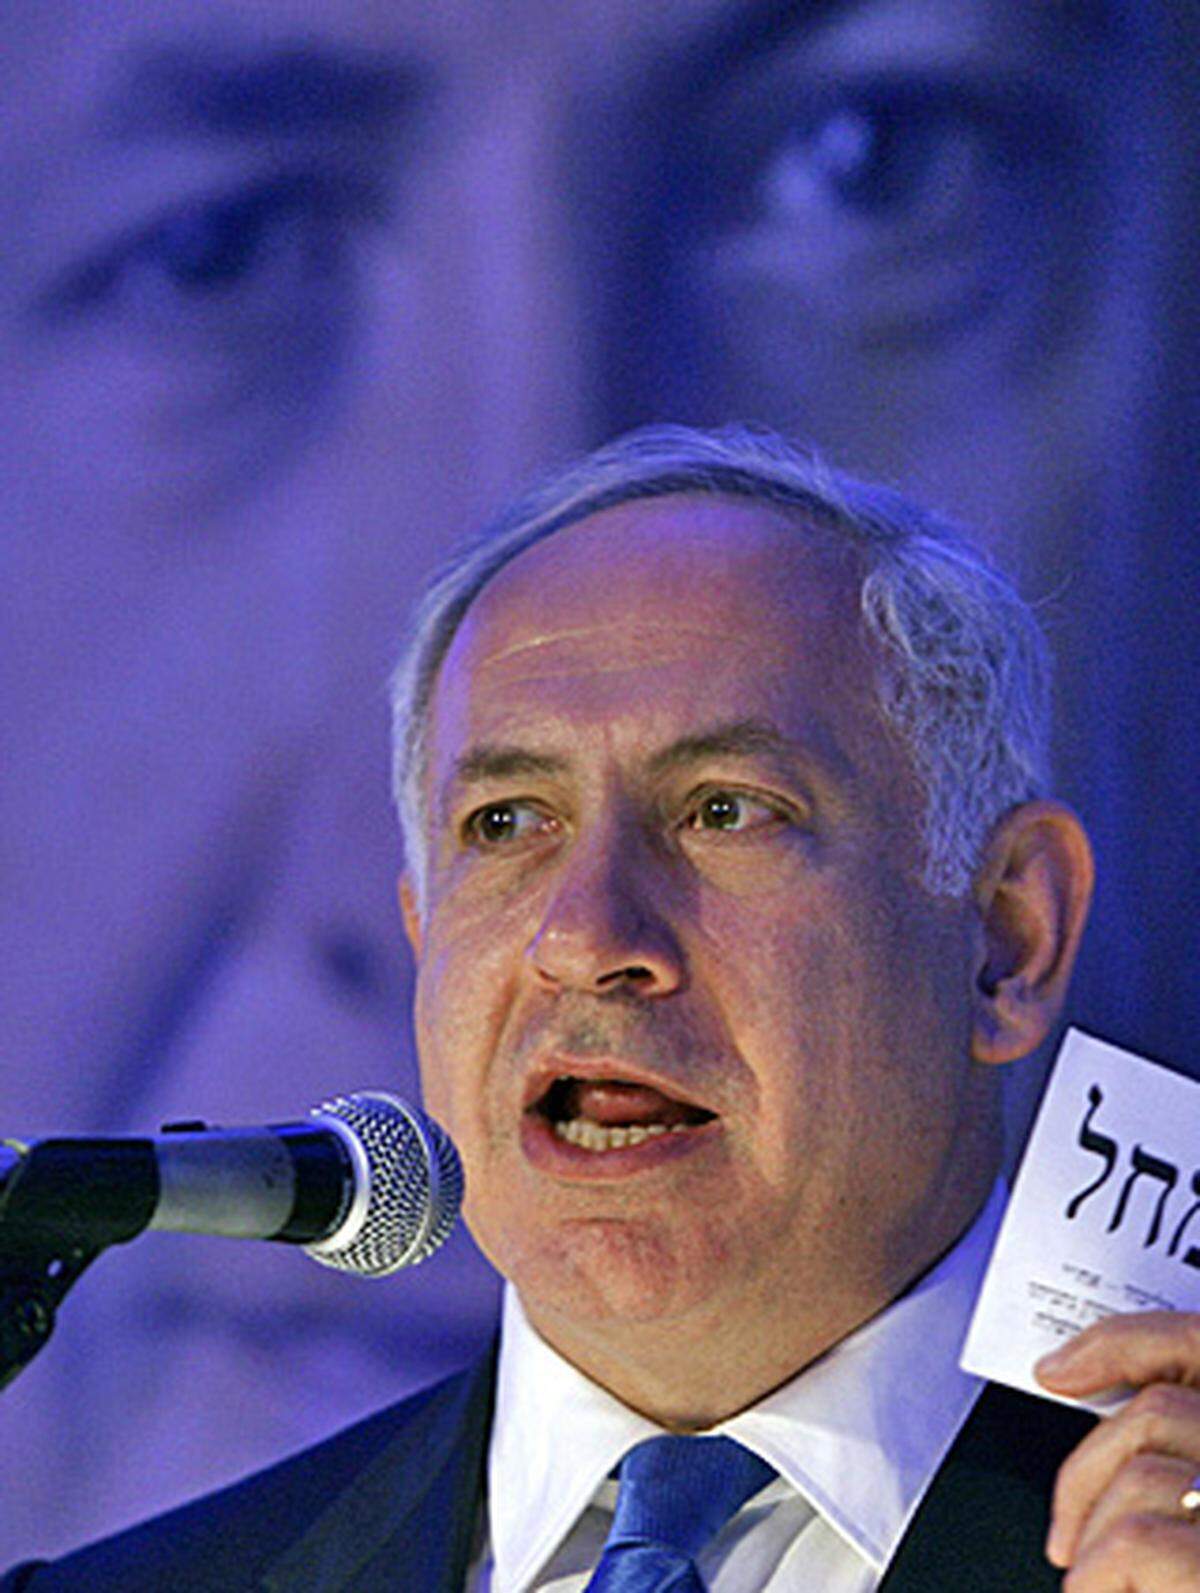 Er ist Livni nicht nur auf den Fersen, sondern hat sie in den meisten Umfragen sogar schon überholt: Ex-Ministerpräsident und Chef der rechtsgerichteten Likud-Partei Benjamin Netanyahu. Die damals intern zerrissene Likud-Partei musste bei den letzten Wahlen 2006 eine bittere Niederlage hinnehmen. Netanyahu erhob als Oppositionsführer oft und laut die Stimme - dies könnte dem als Hardliner geltenden Ex-Ministerpräsidenten den Wahlsieg bescheren. Die Palästinenser fürchten dies: Netanyahu gilt als radikalisiert und könnte die Friedensverhandlungen ganz abbrechen. "Bibi", wie er genannt wird, hält an der Idee des "Erez Israel", eines Israels in biblischen Grenzen, fest.